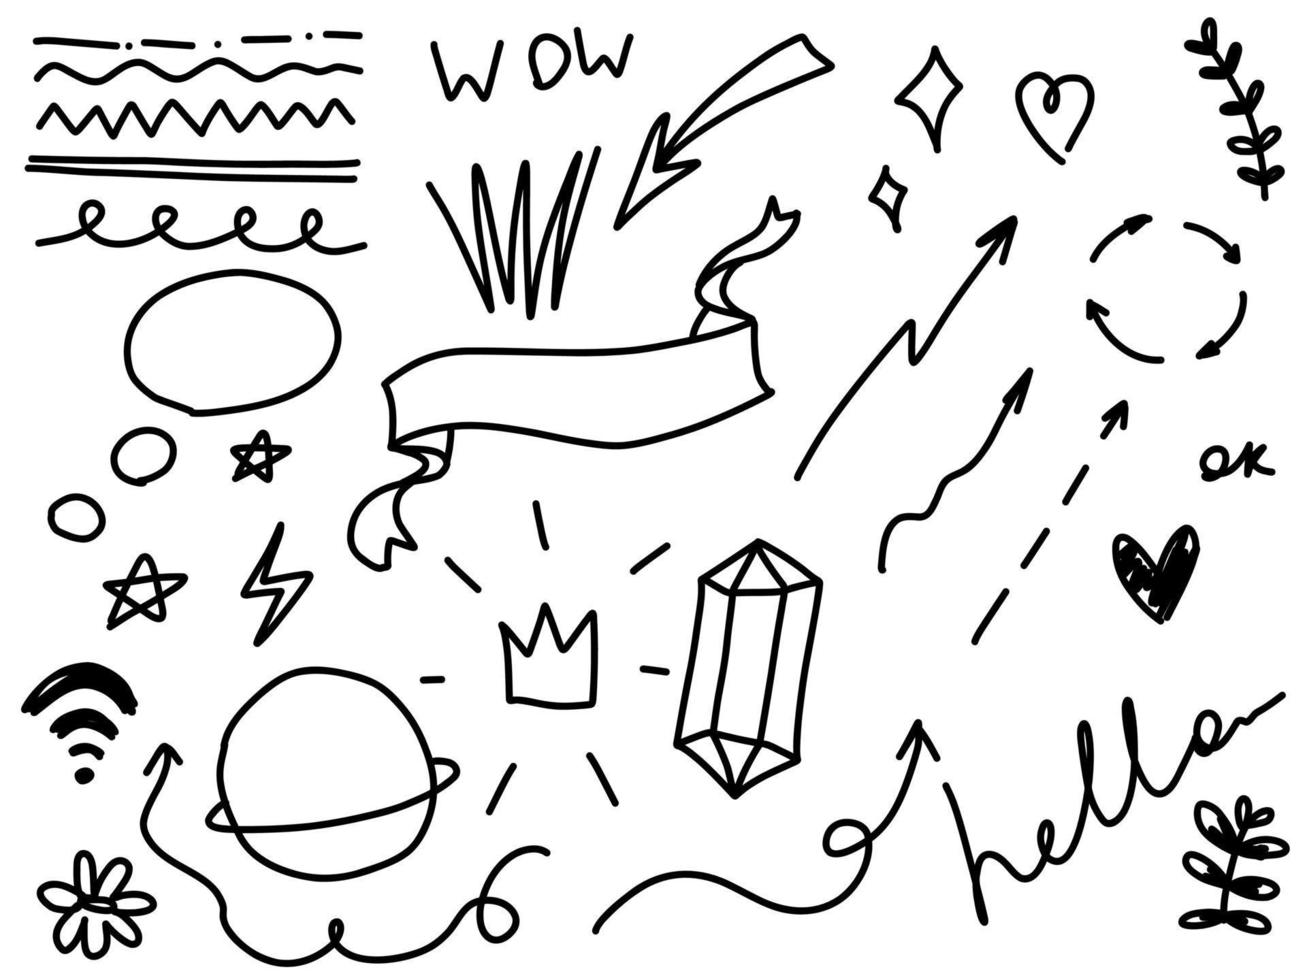 doodle cornici linee frecce, pianeta, stelle, diamante, ciao, testo wow, corona. schizzo set carino collezione di linee isolate per ufficio. vettore